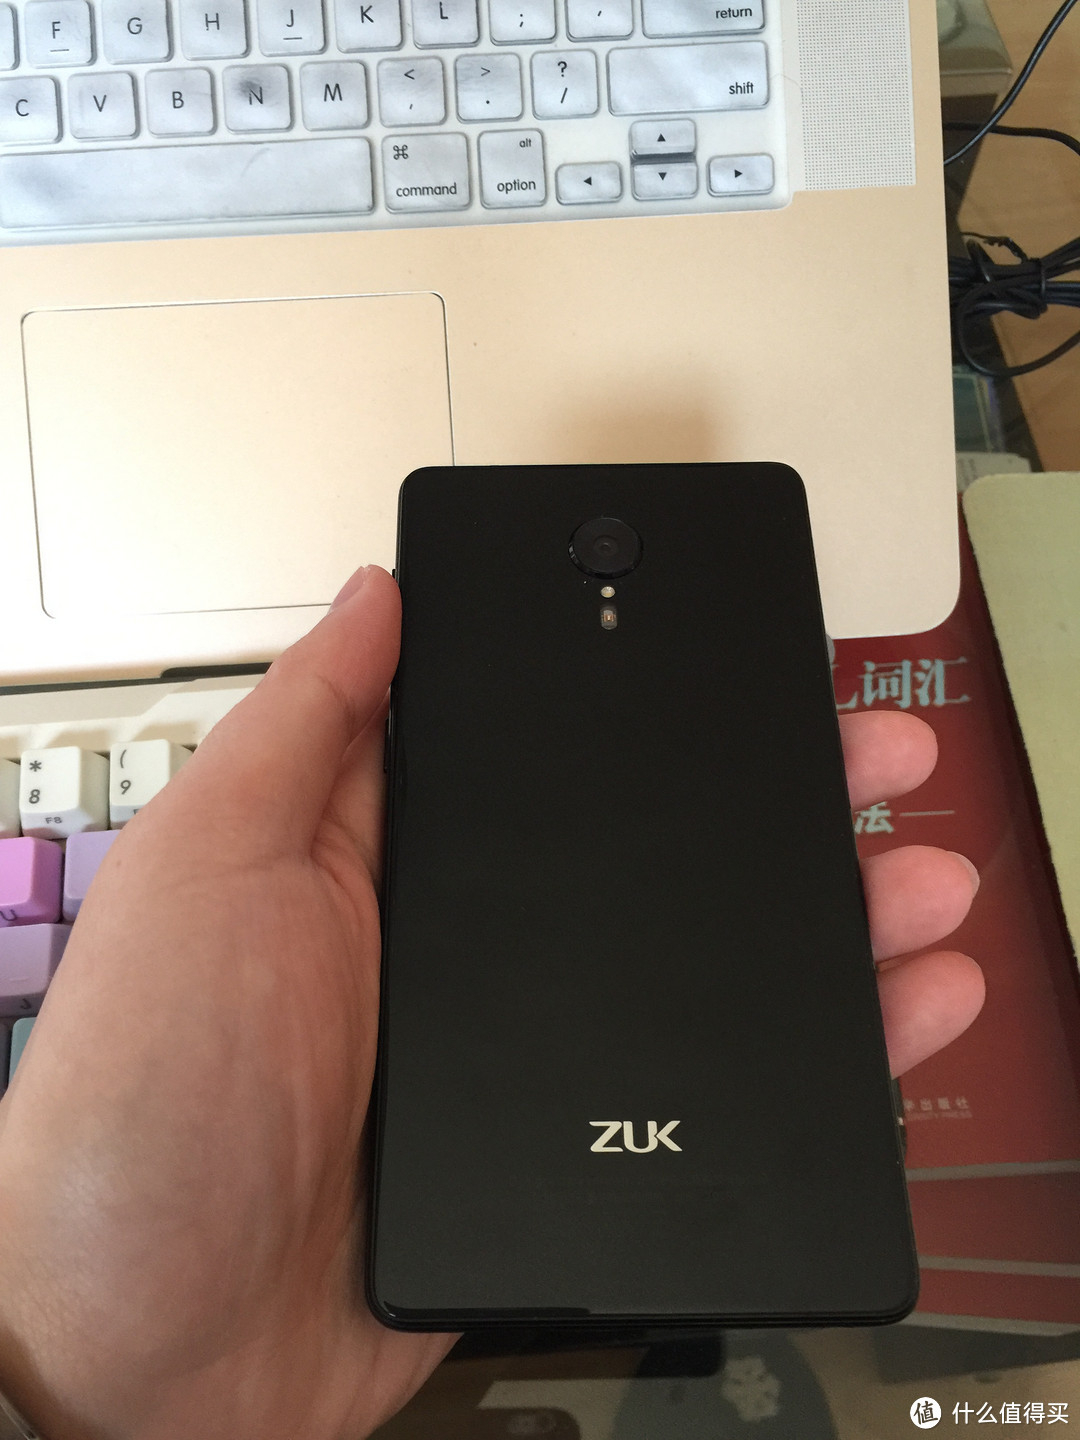 Lenovo 联想 ZUK Edge 智能手机 开箱评测